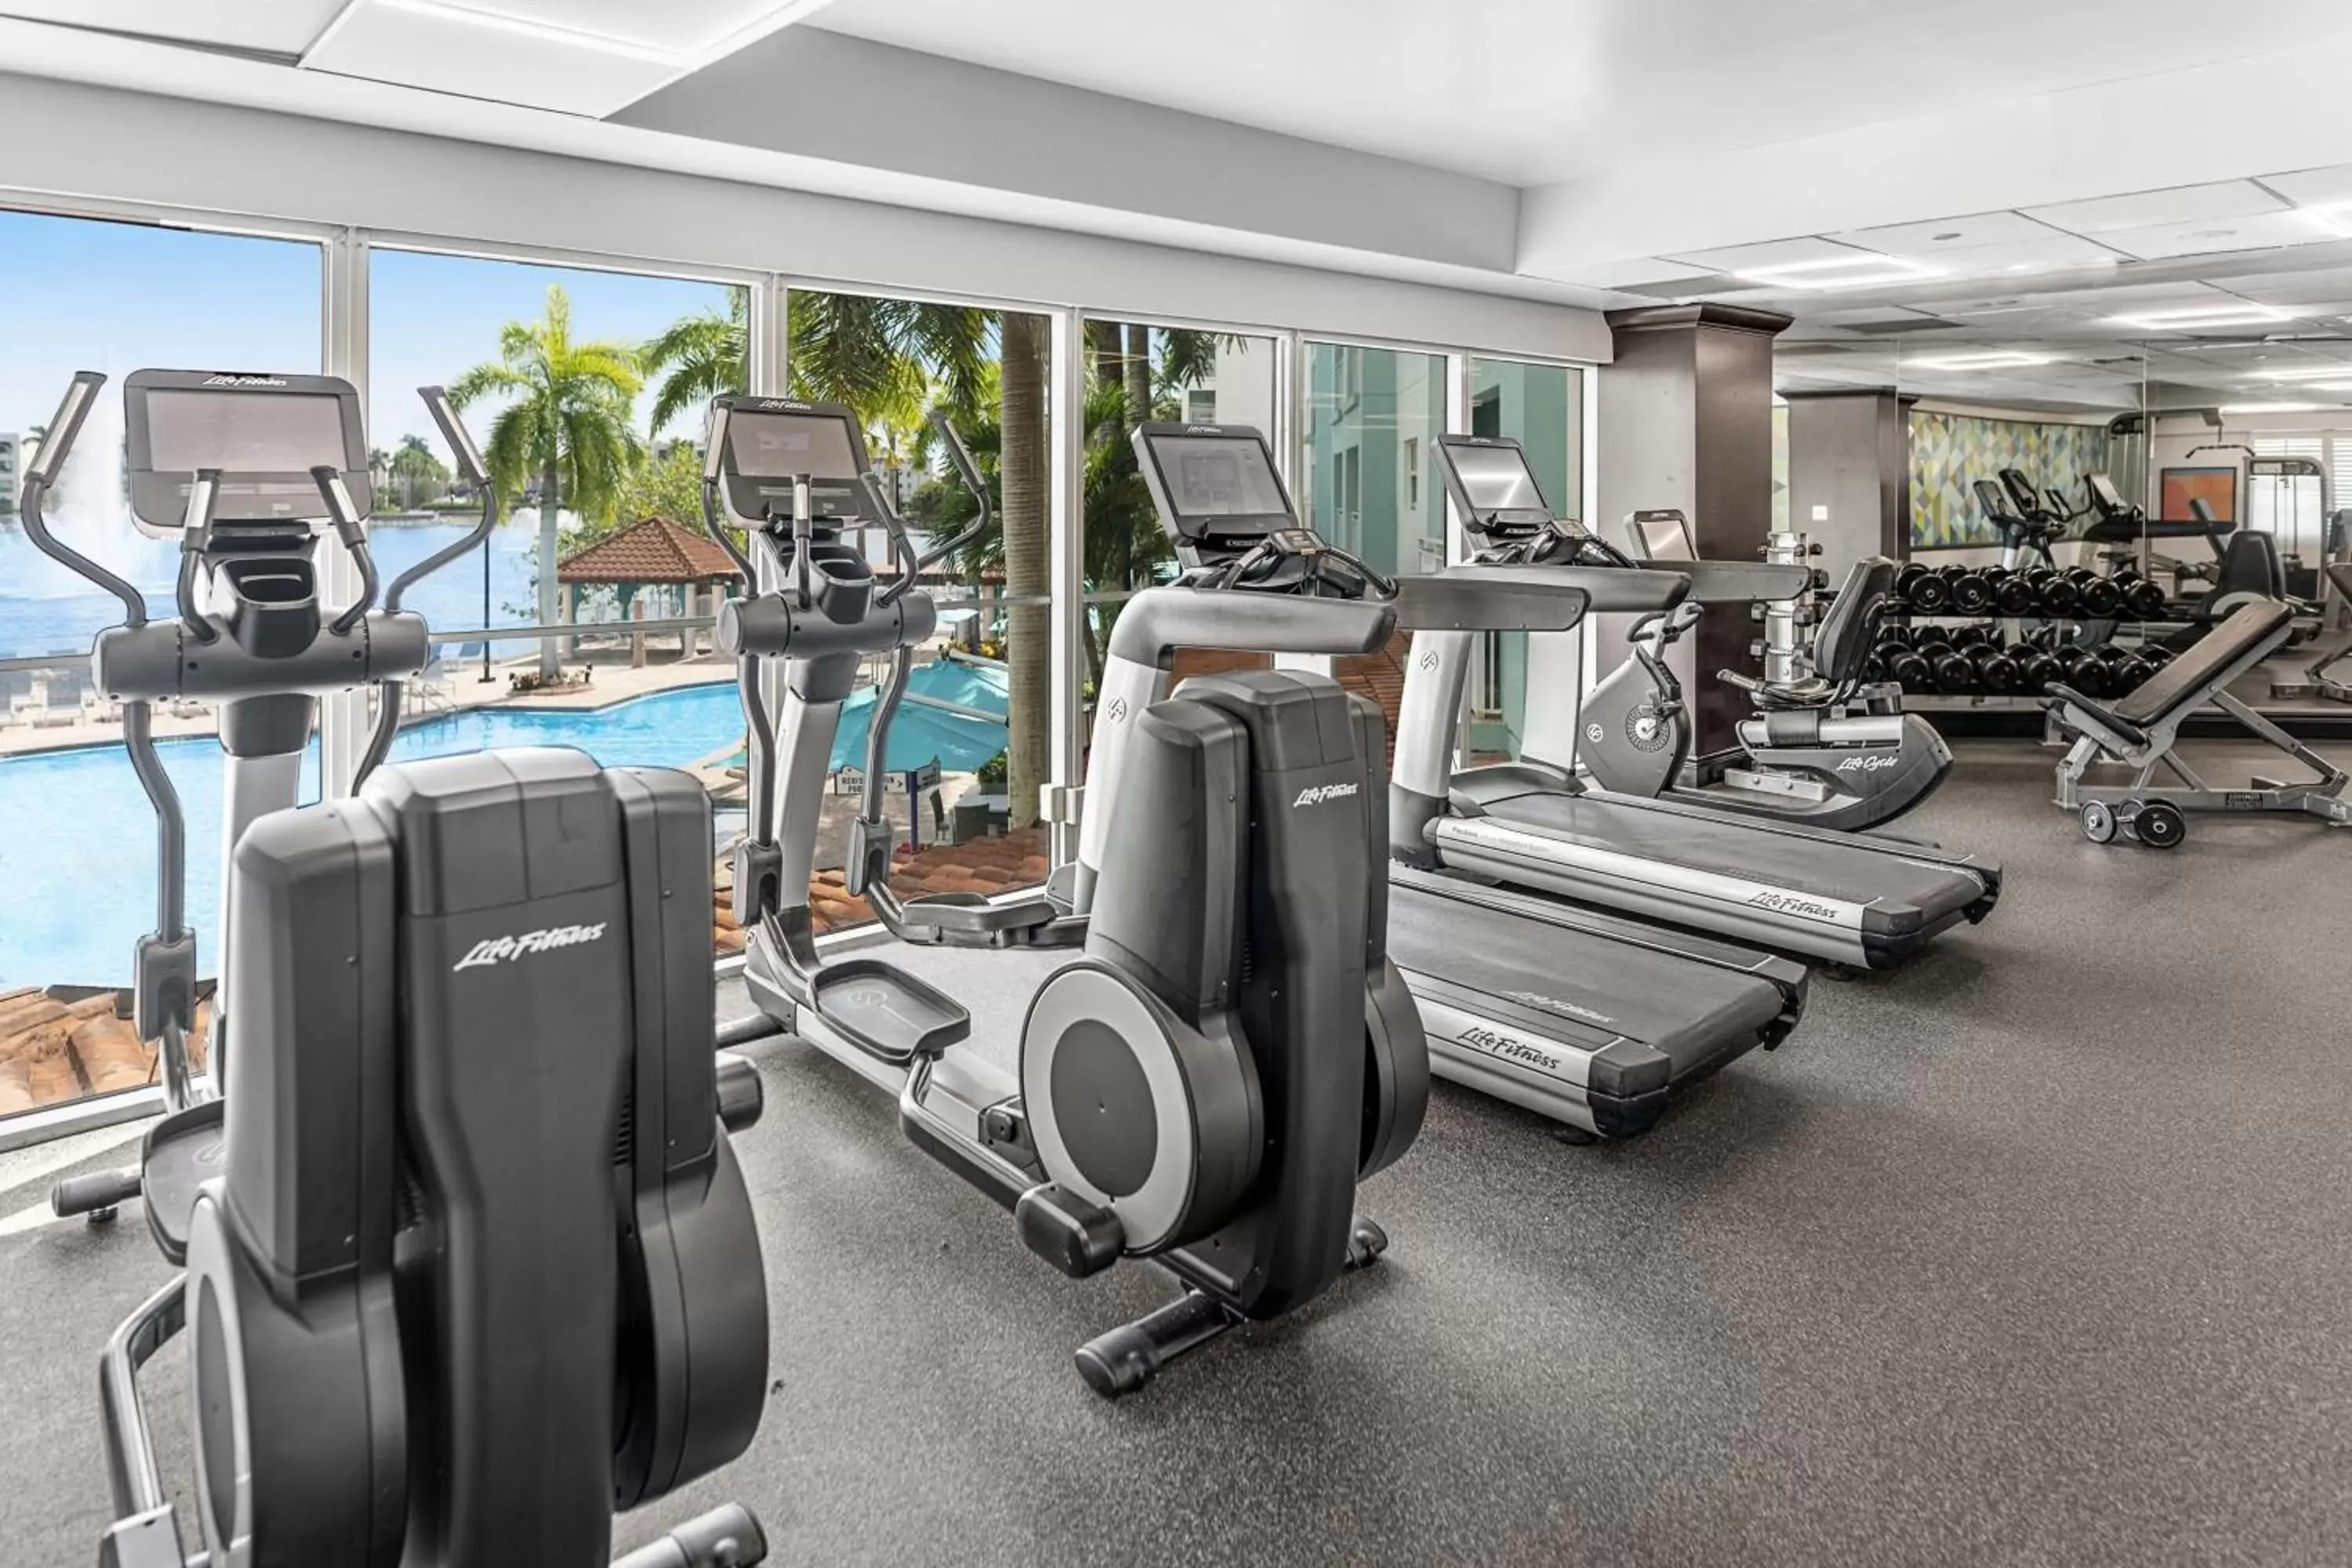 Fitness centre/facilities, Fitness Center/Facilities in Marriott's Villas At Doral